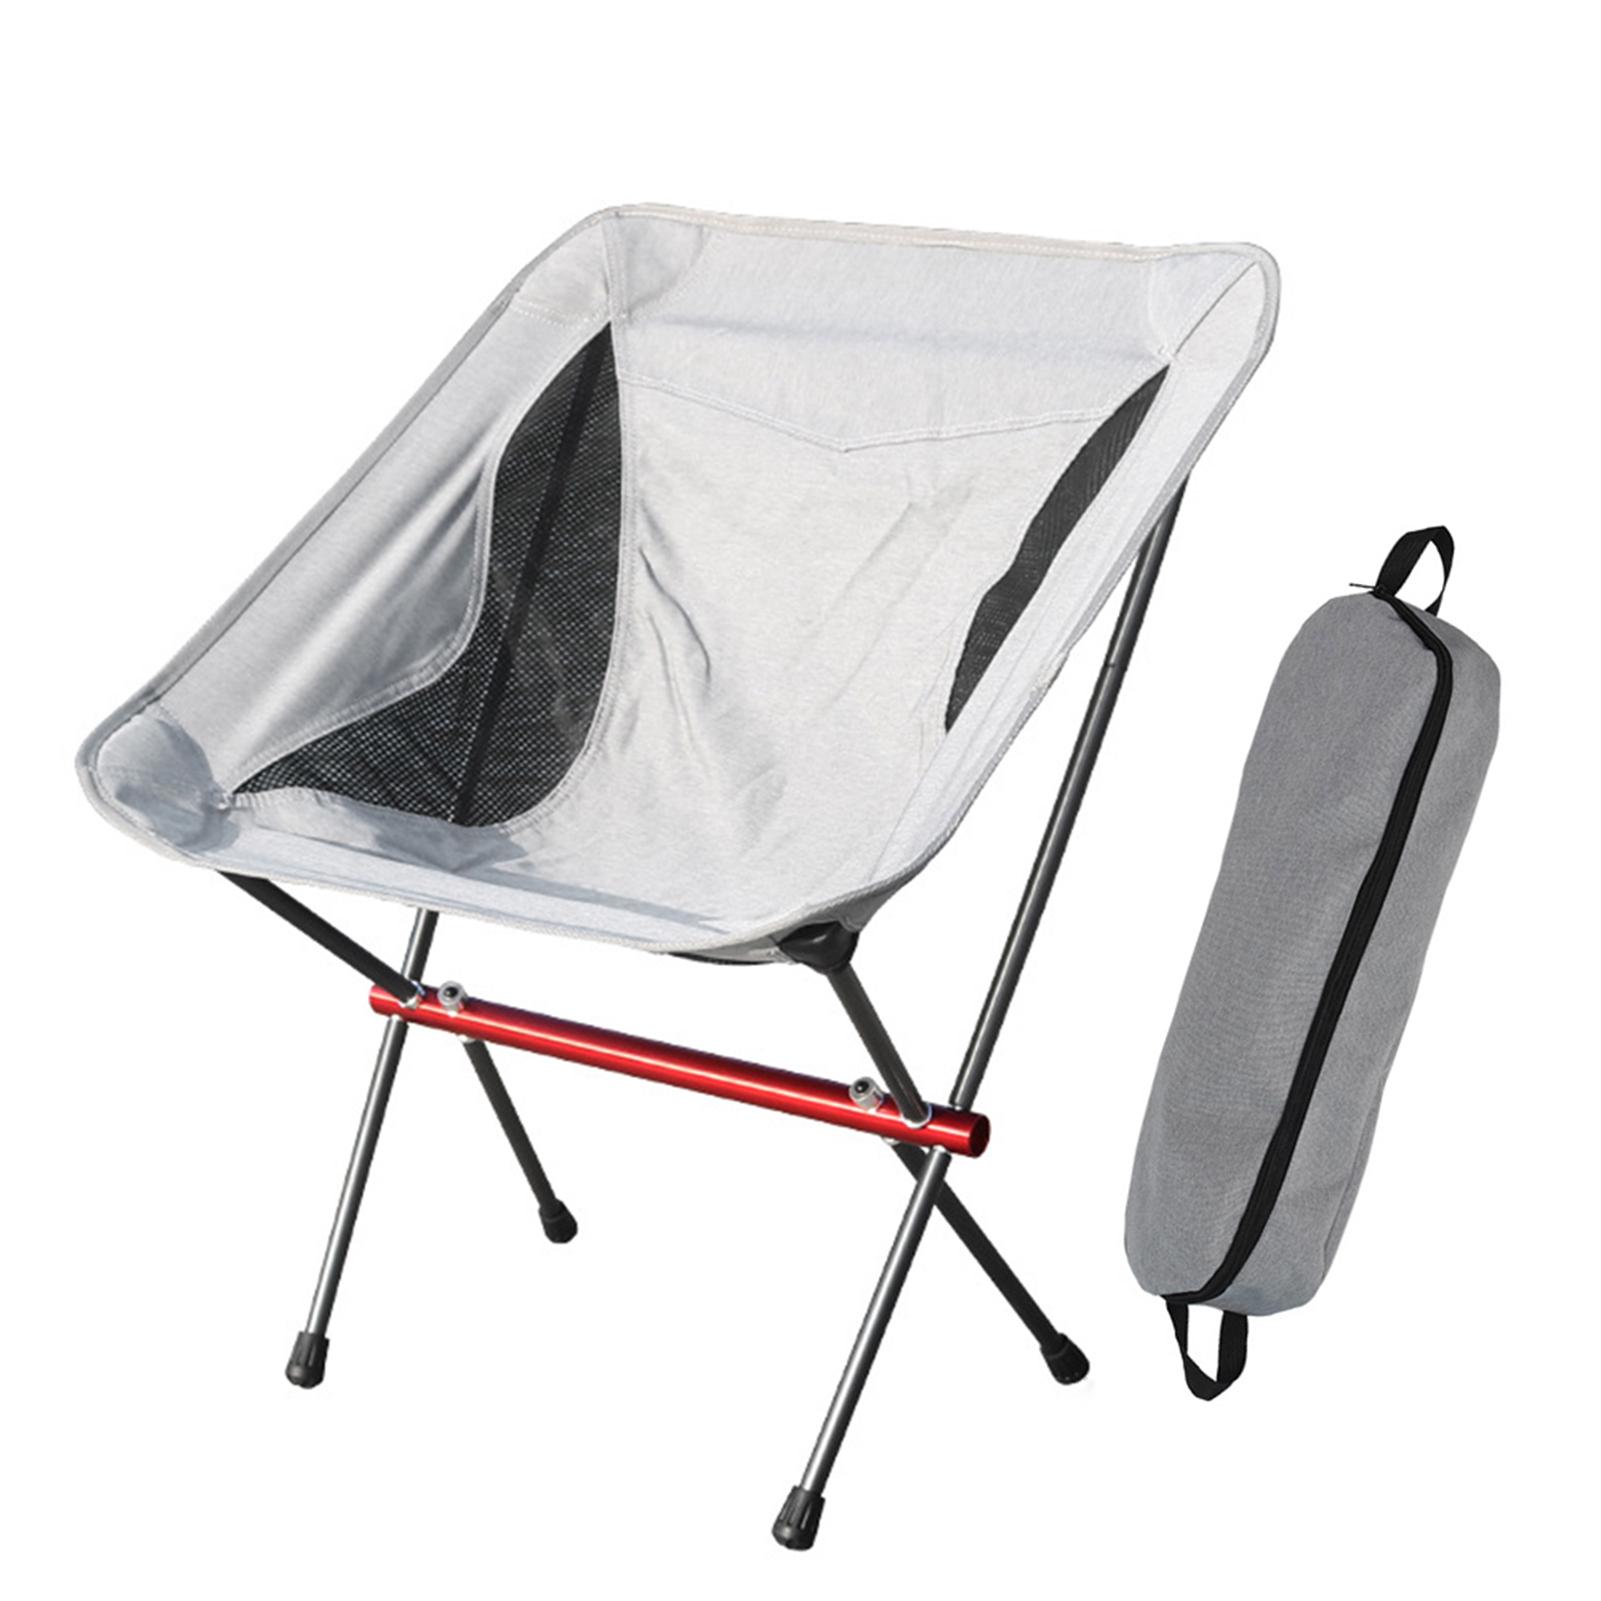 Ghế cắm trại có thể gập lại ,Được làm vải oxford chống thấm nước và khung bằng hợp kim nhôm có độ bền cao